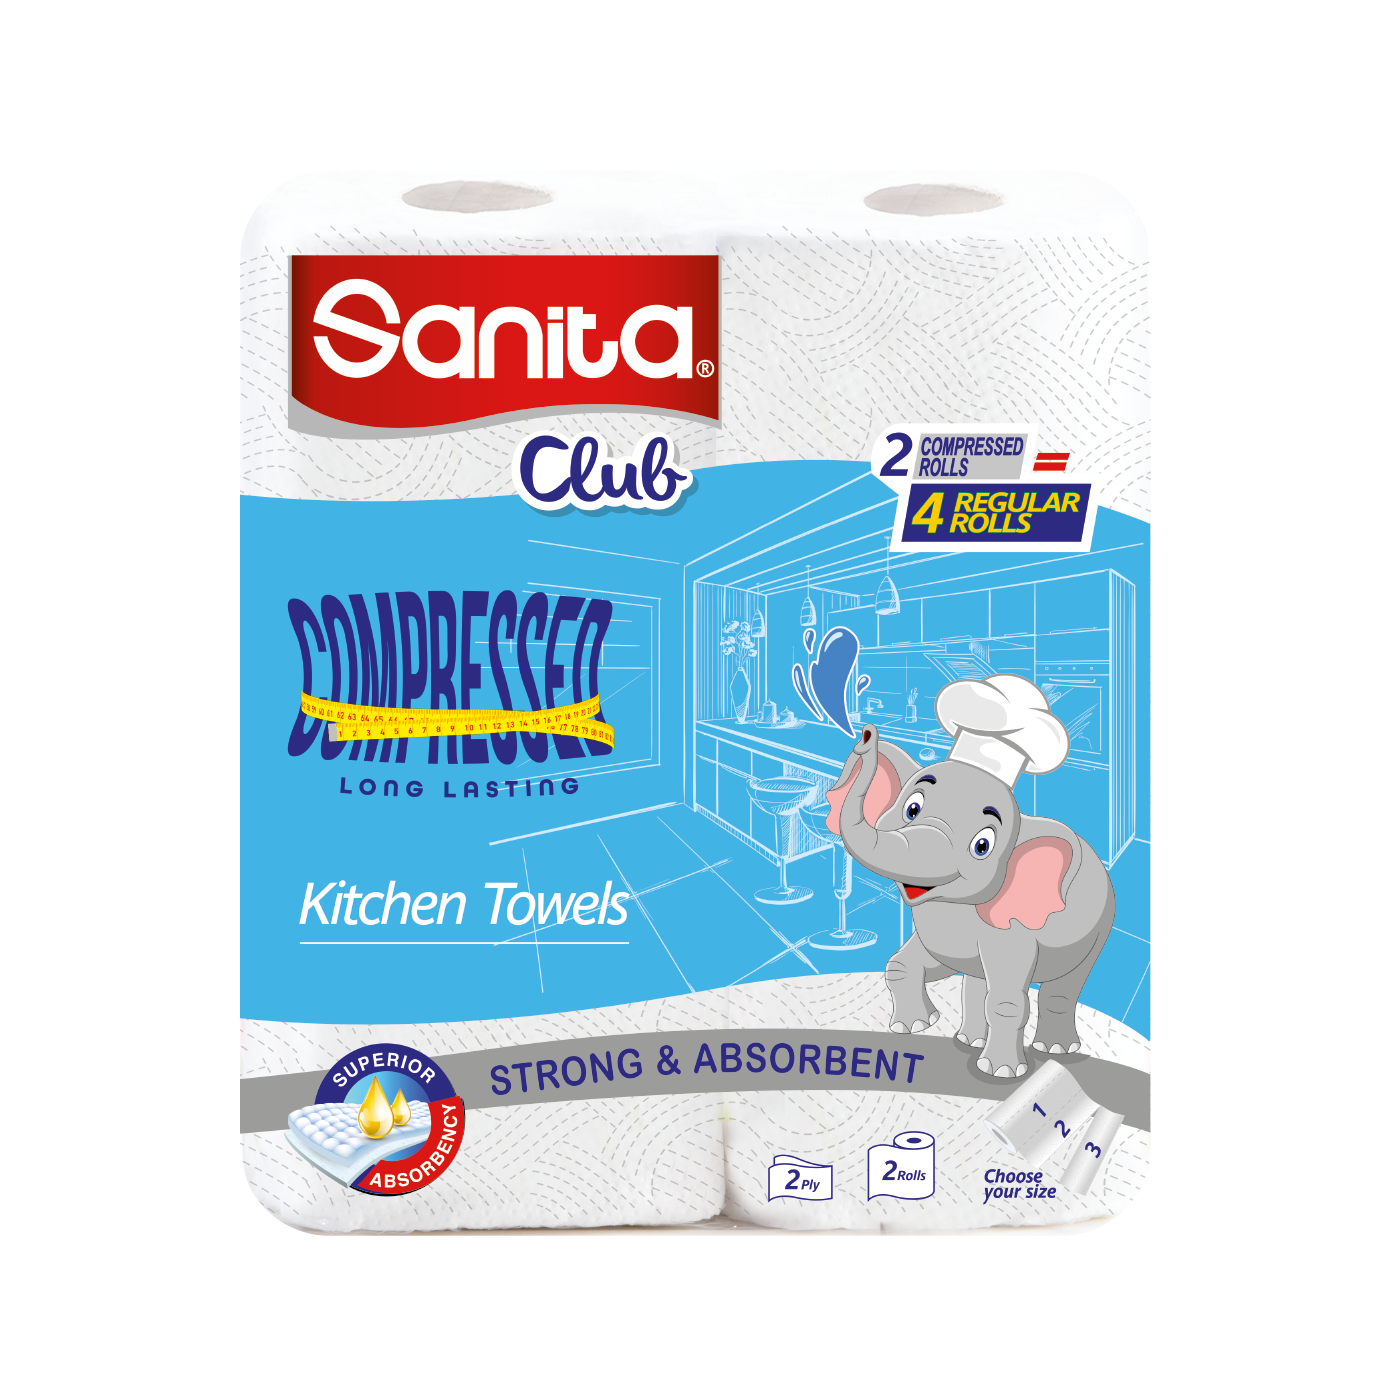 Sanita Club kitchen Towel 2 Rolls